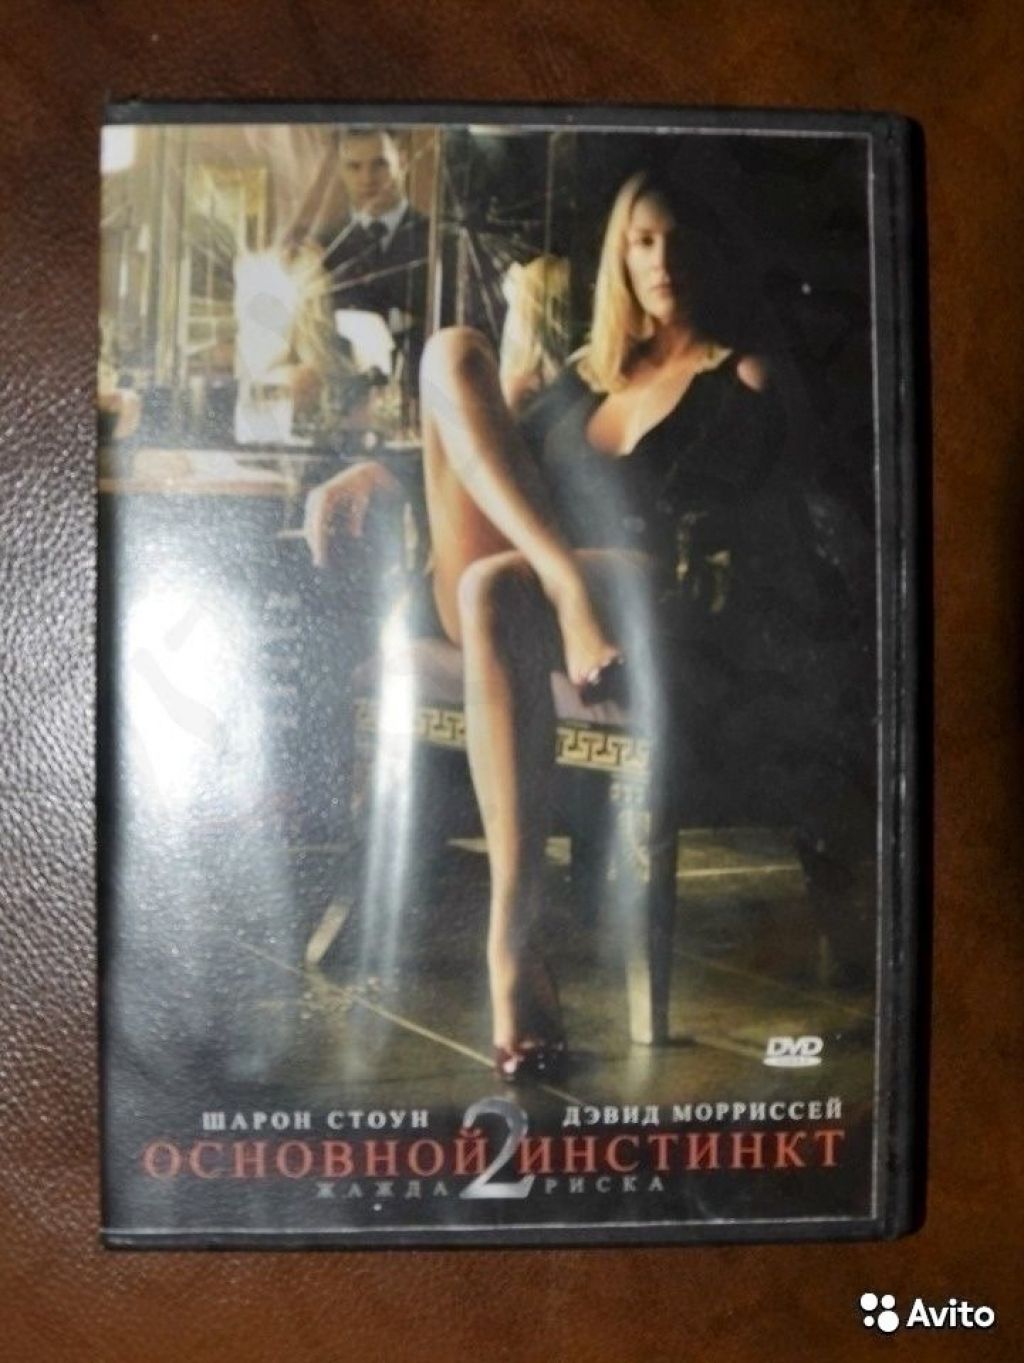 Фильм Основной инстинкт 2 на DVD с Шарон Стоун в Москве. Фото 1